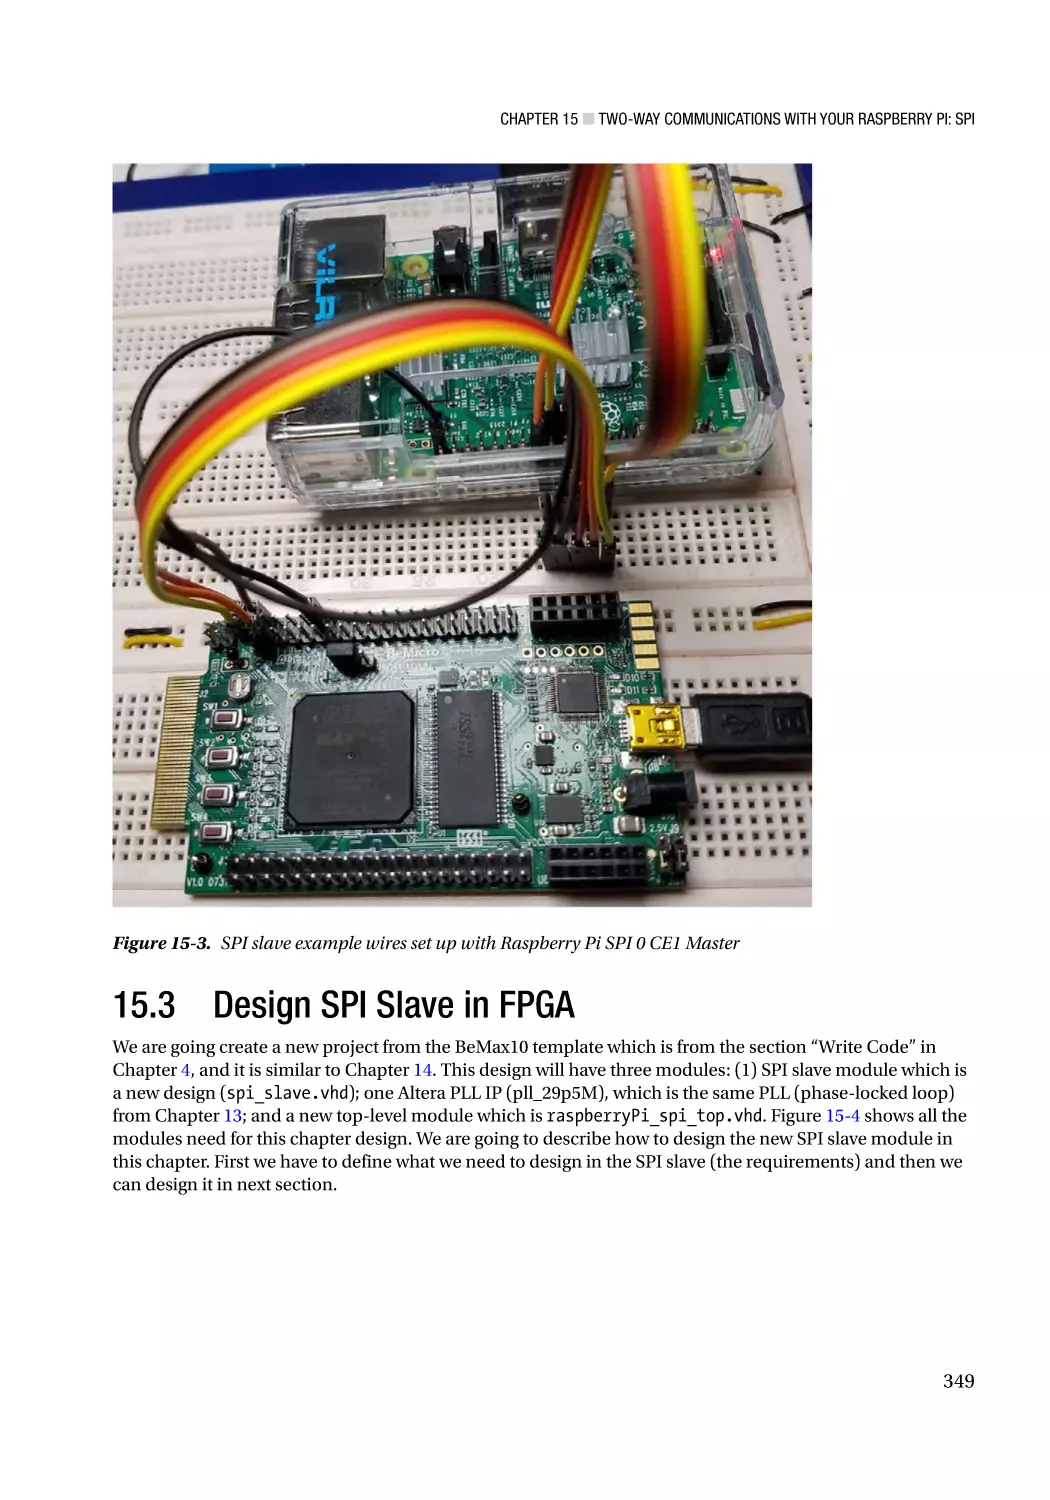 15.3 Design SPI Slave in FPGA